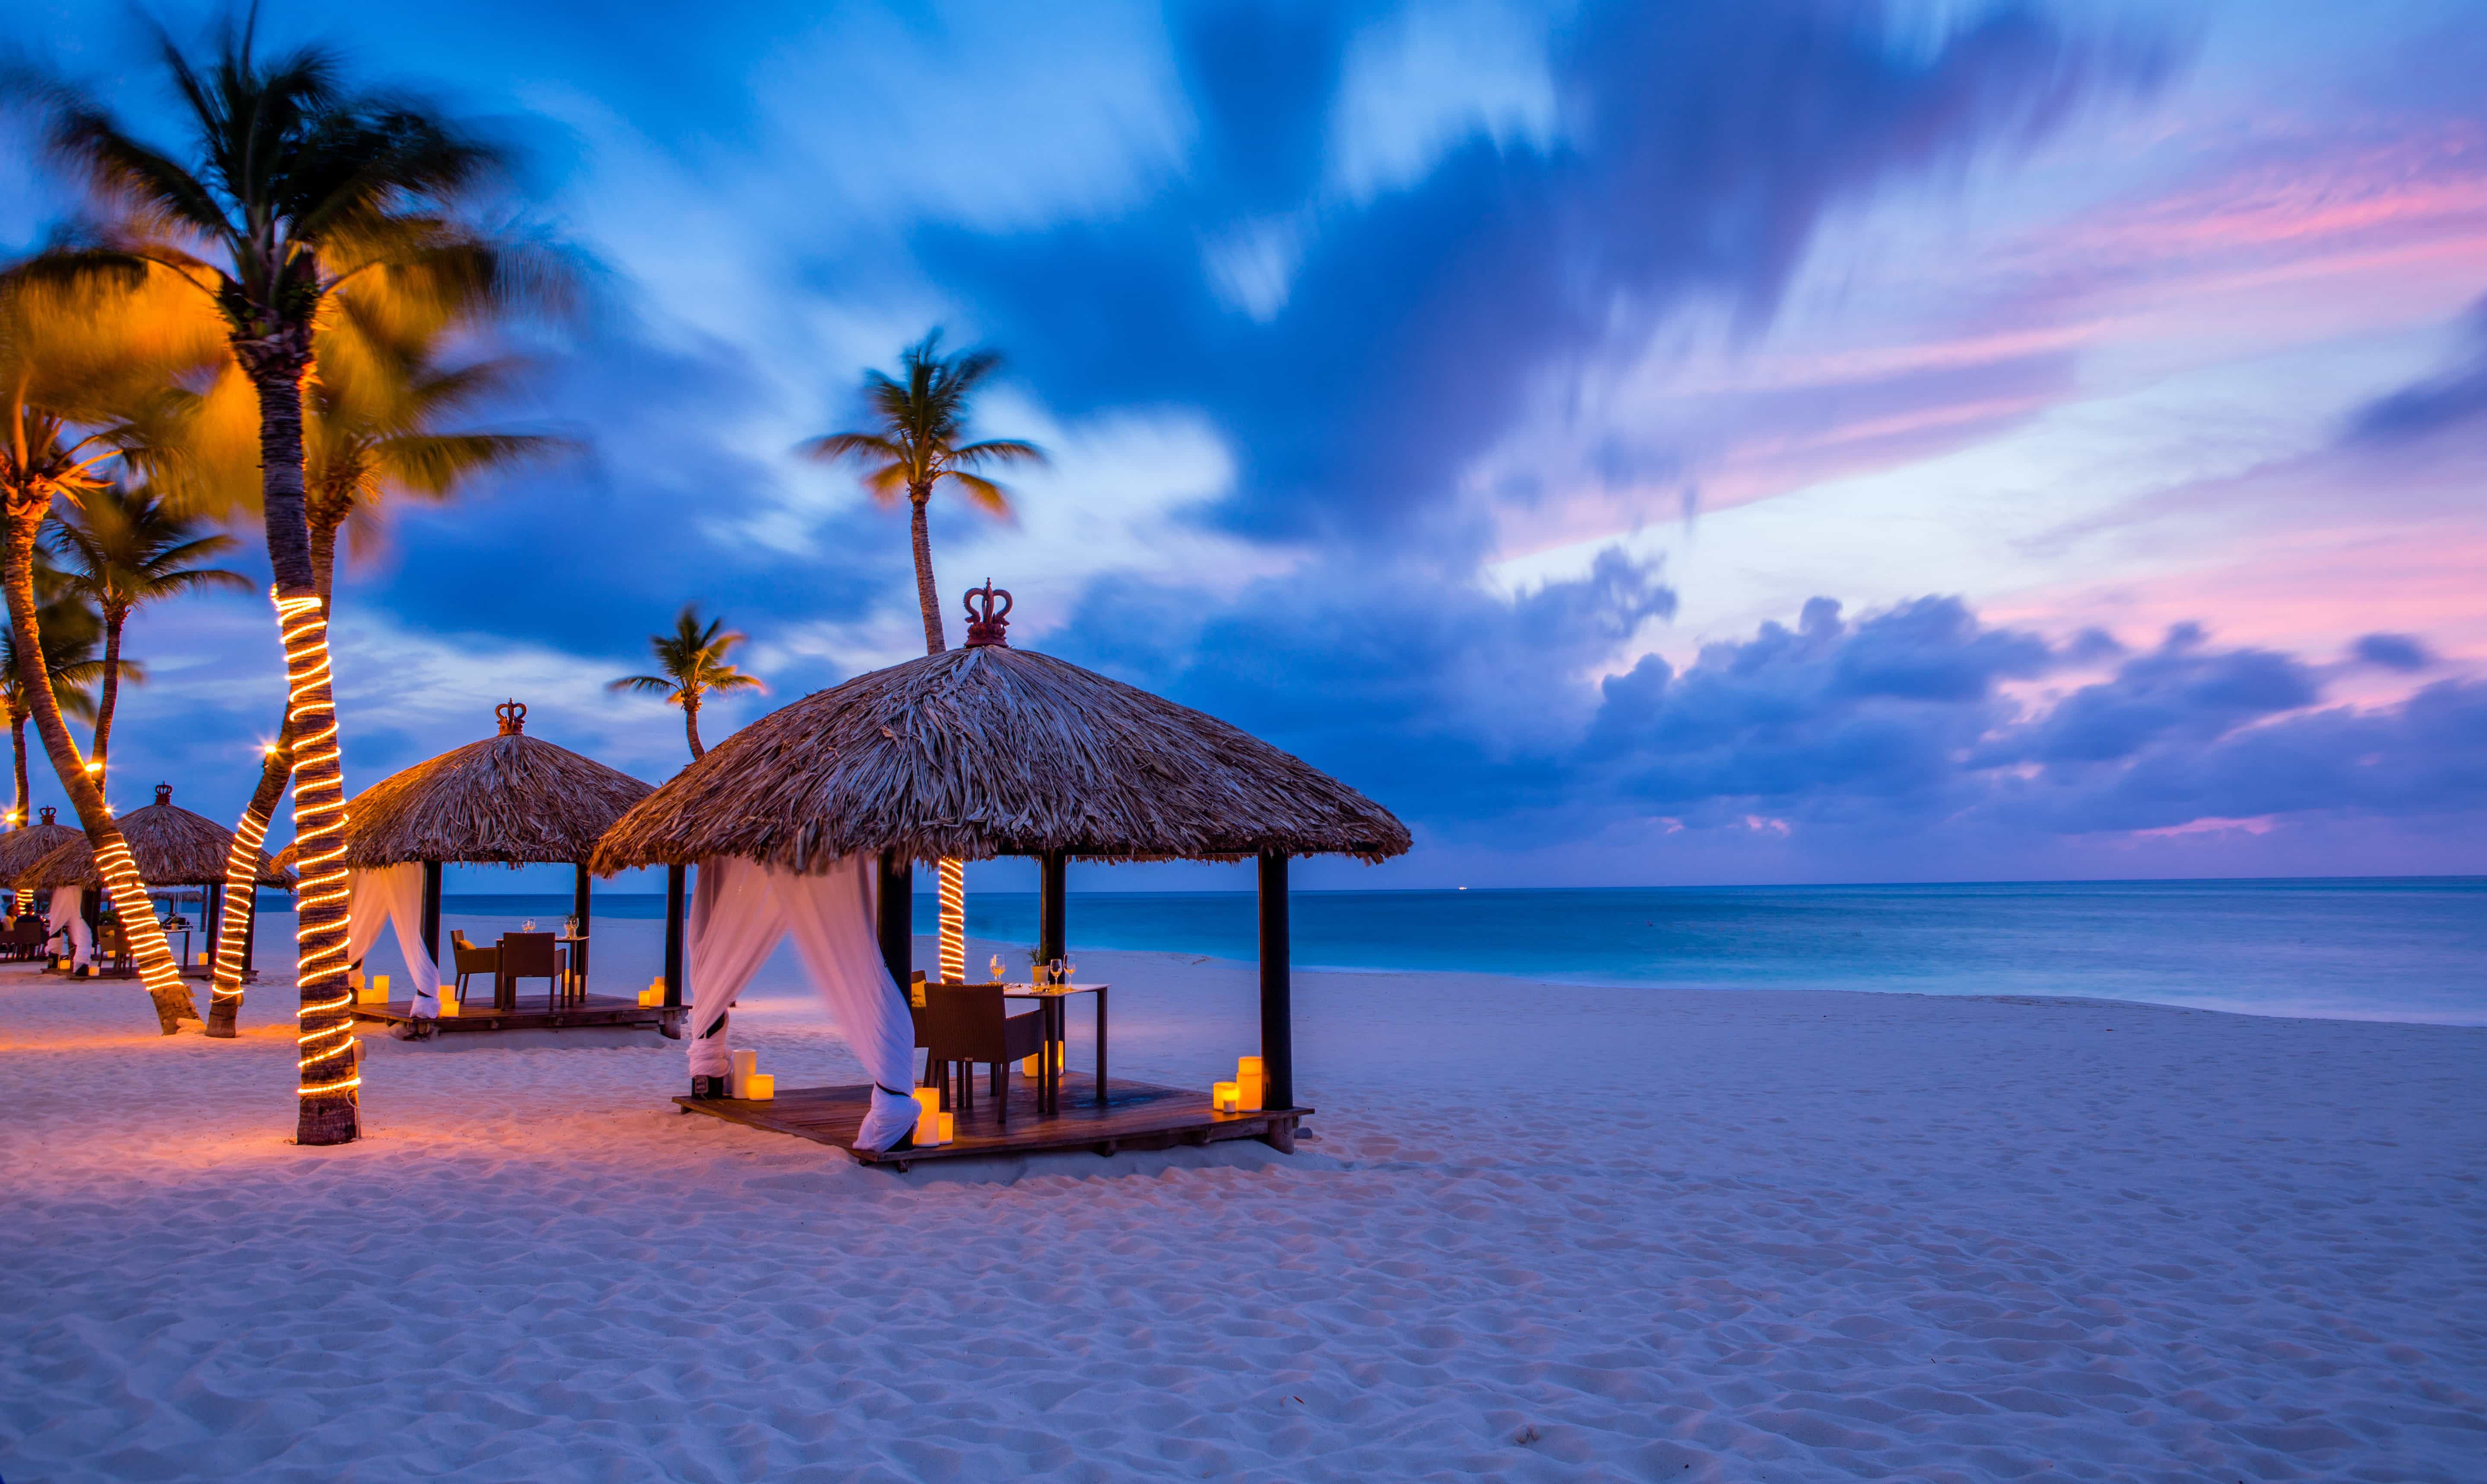 Sunset at Bucuti & Tara Beach Resort, Aruba